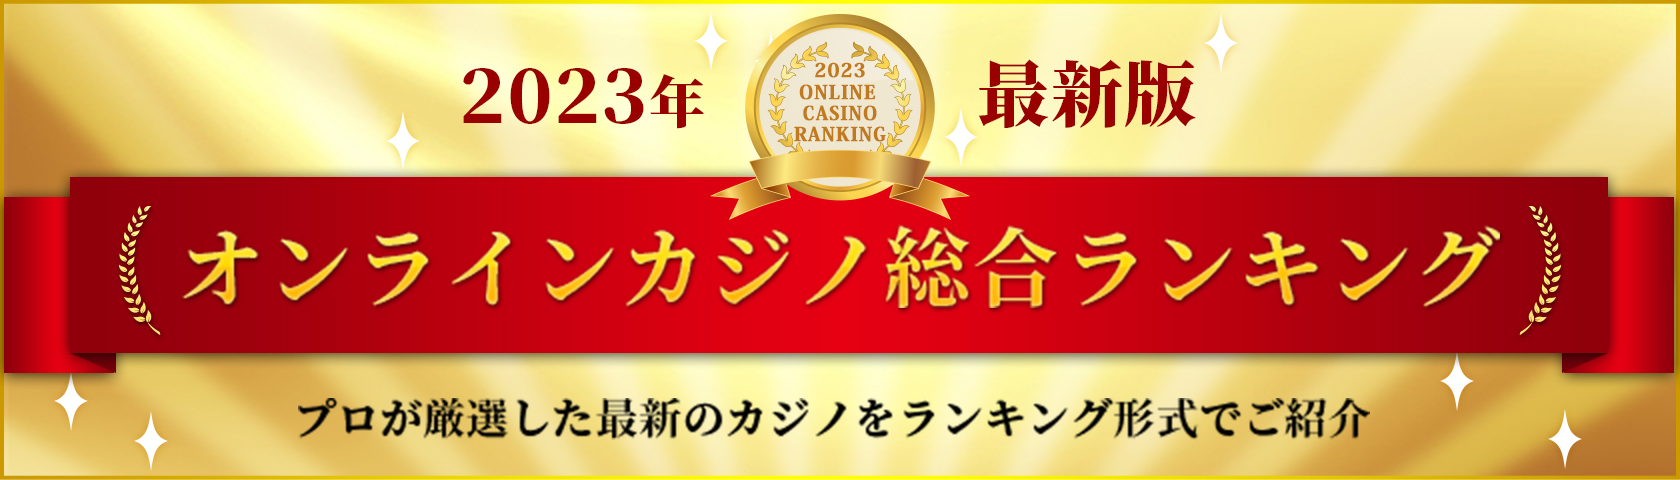 オンラインカジノ日本人向けの10ステップチェックリスト